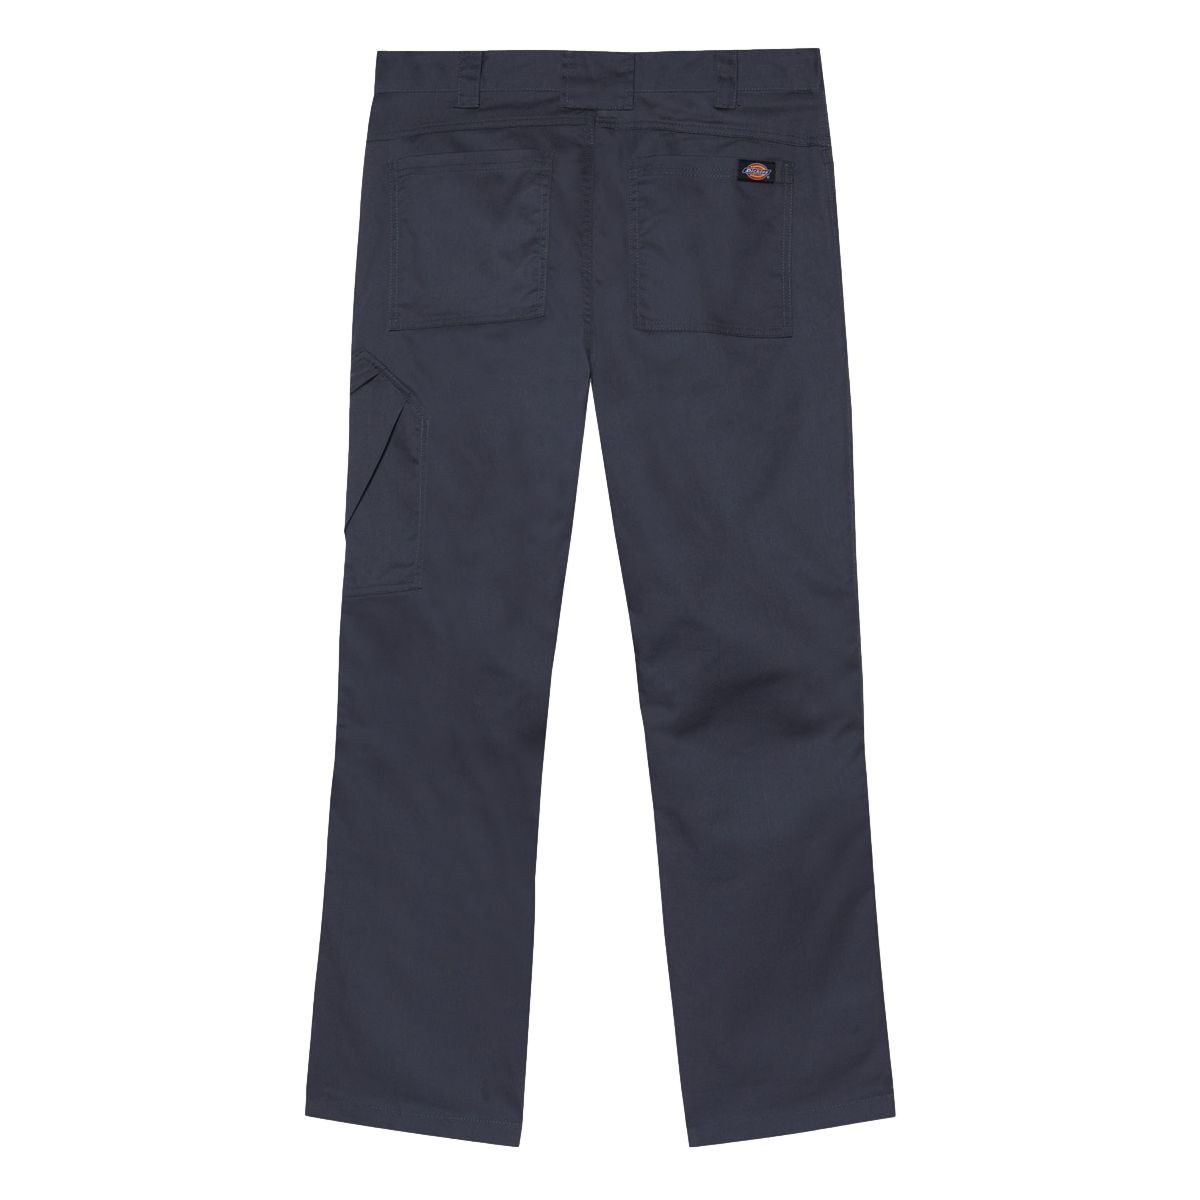 Pantalon de travail Action Flex gris - Dickies - Taille 40 2